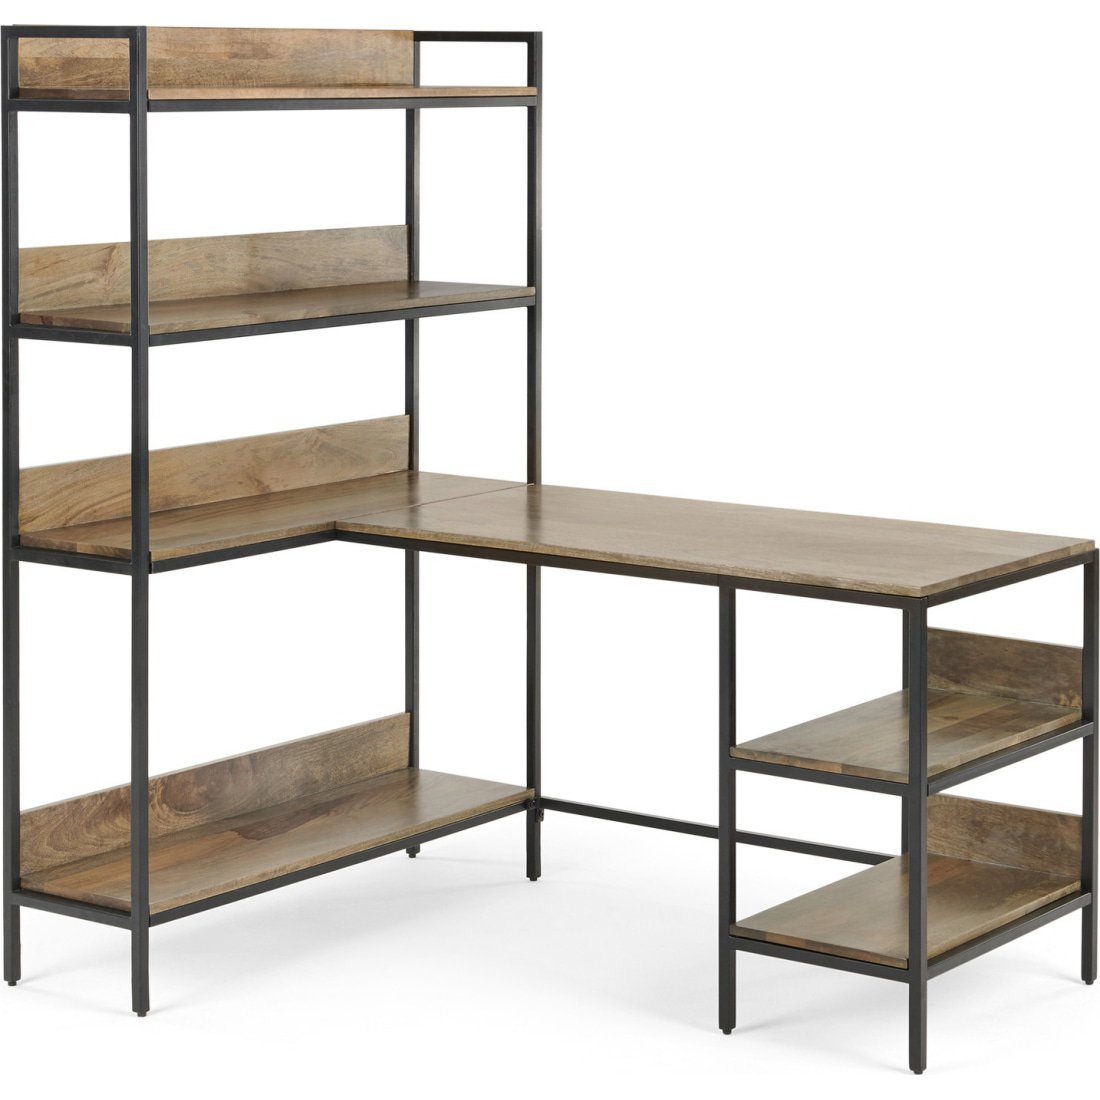 Lomond Adjustable Corner Desk with Shelves, Mango Wood and Black